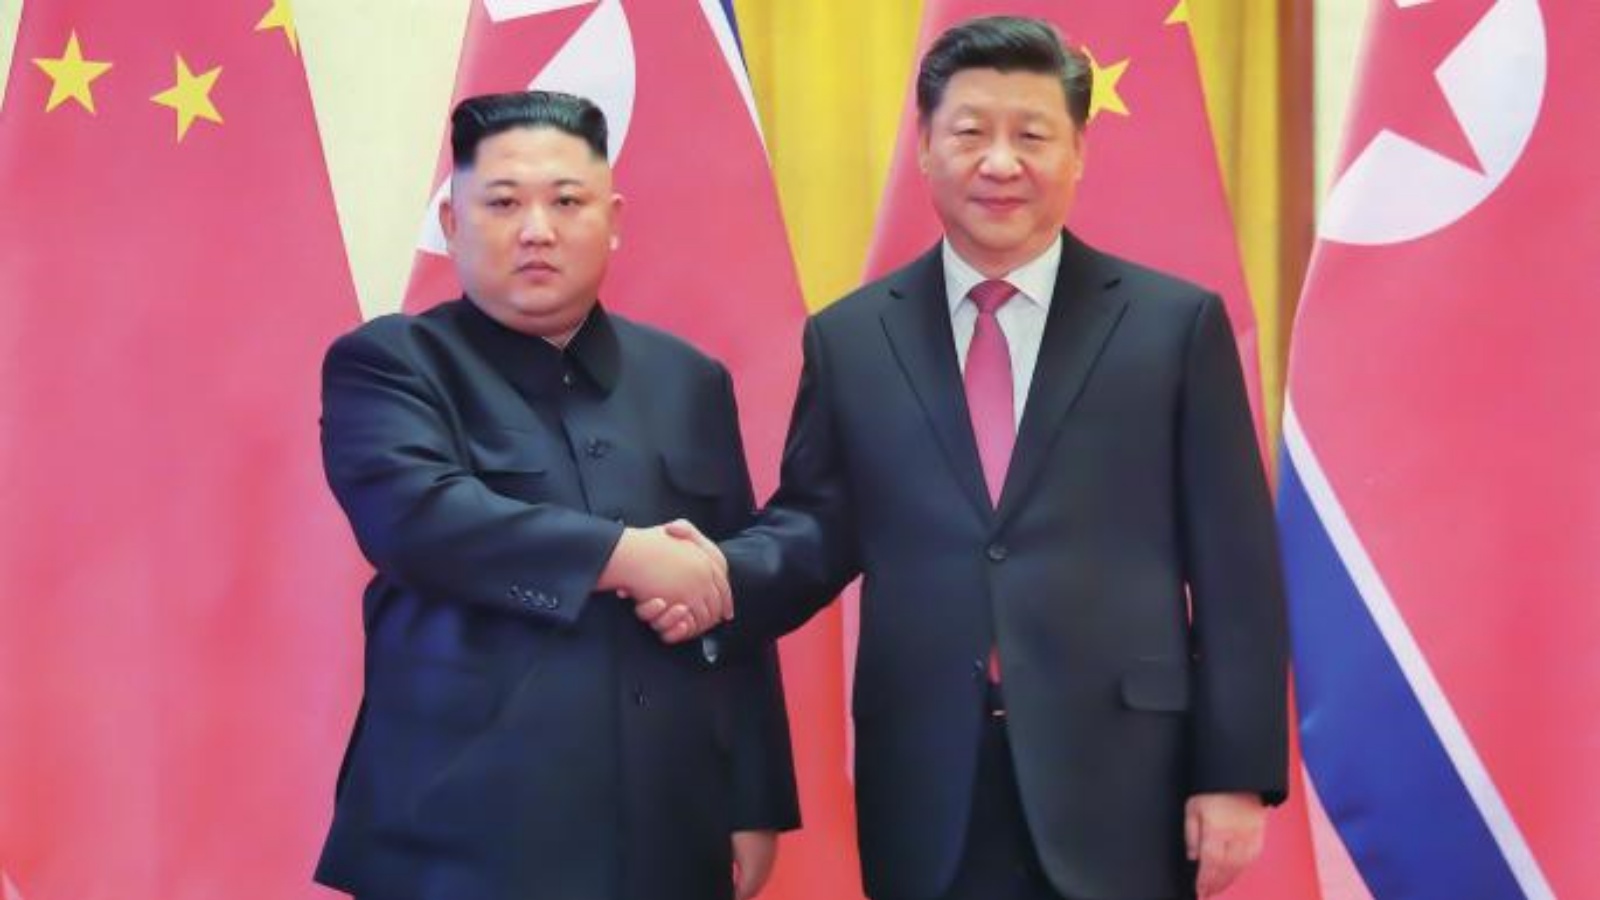 الرئيس الصيني يعرض على الزعيم الكوري الشمالي التعاون من أجل السلام في العالم